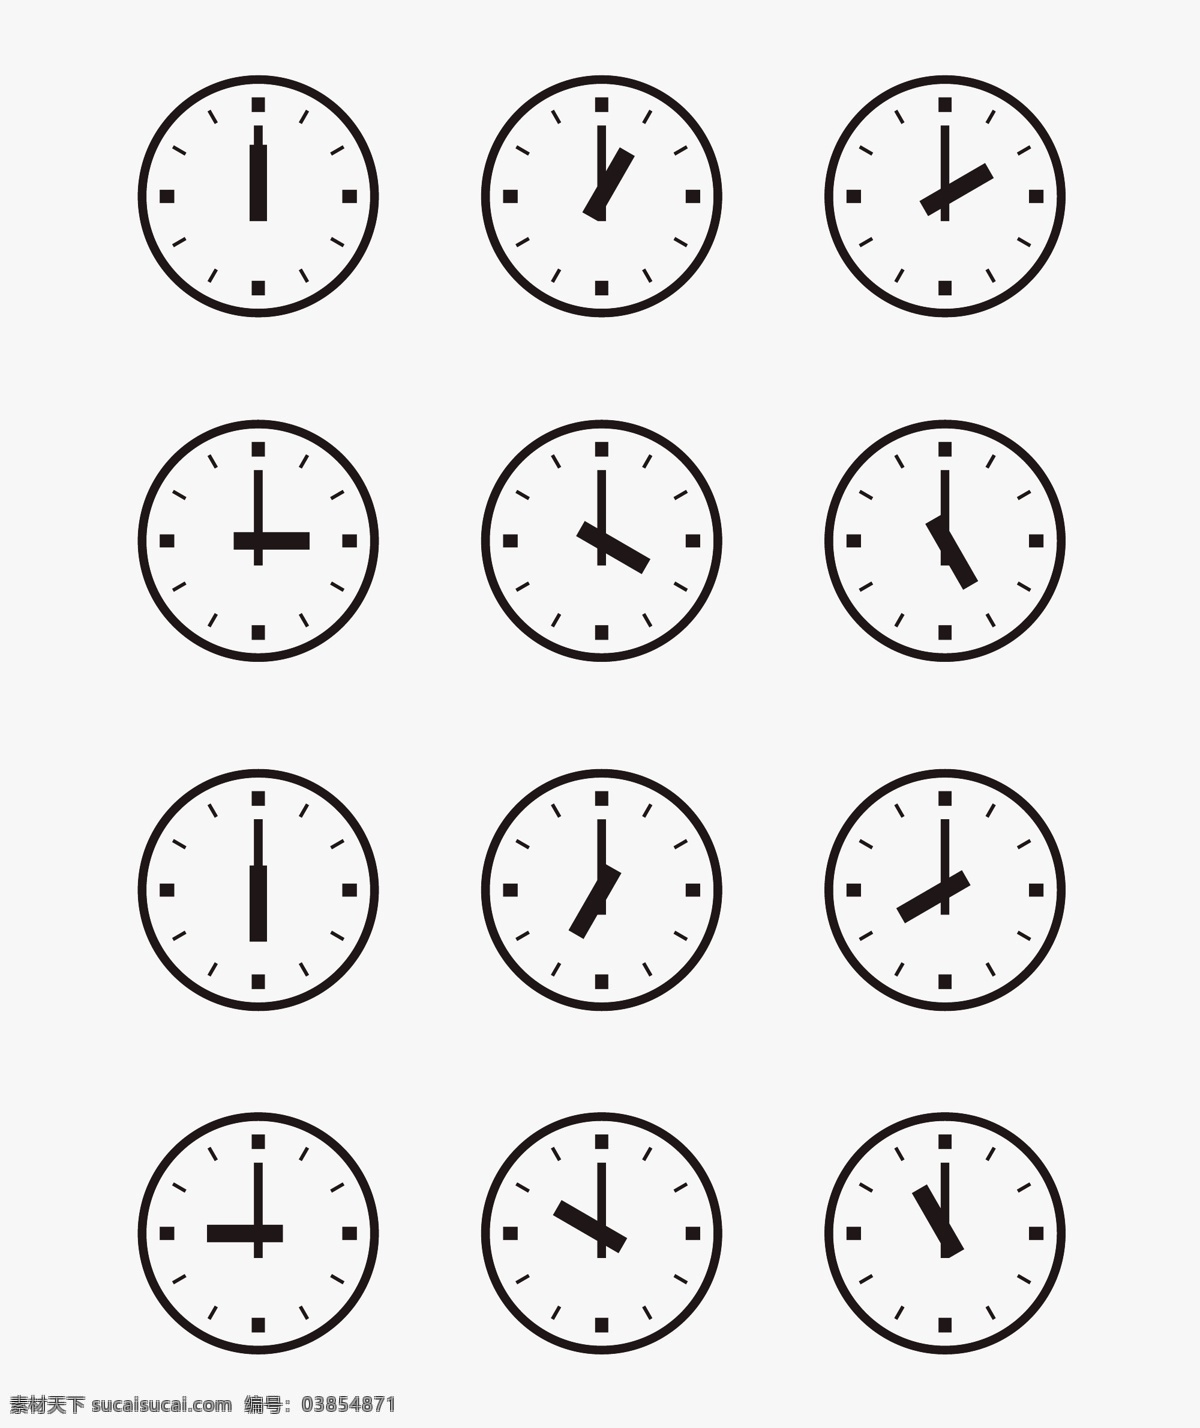 组 次 壁钟 墙 设置 时代 钟表 设置墙 墙上钟表 钟表的另一个 另一个 另一个时代 集挂钟 向量集挂钟 向量集壁 设置时钟向量 向量组的钟 挂钟的图像 墙上 时钟 游离壁 矢量图 其他矢量图